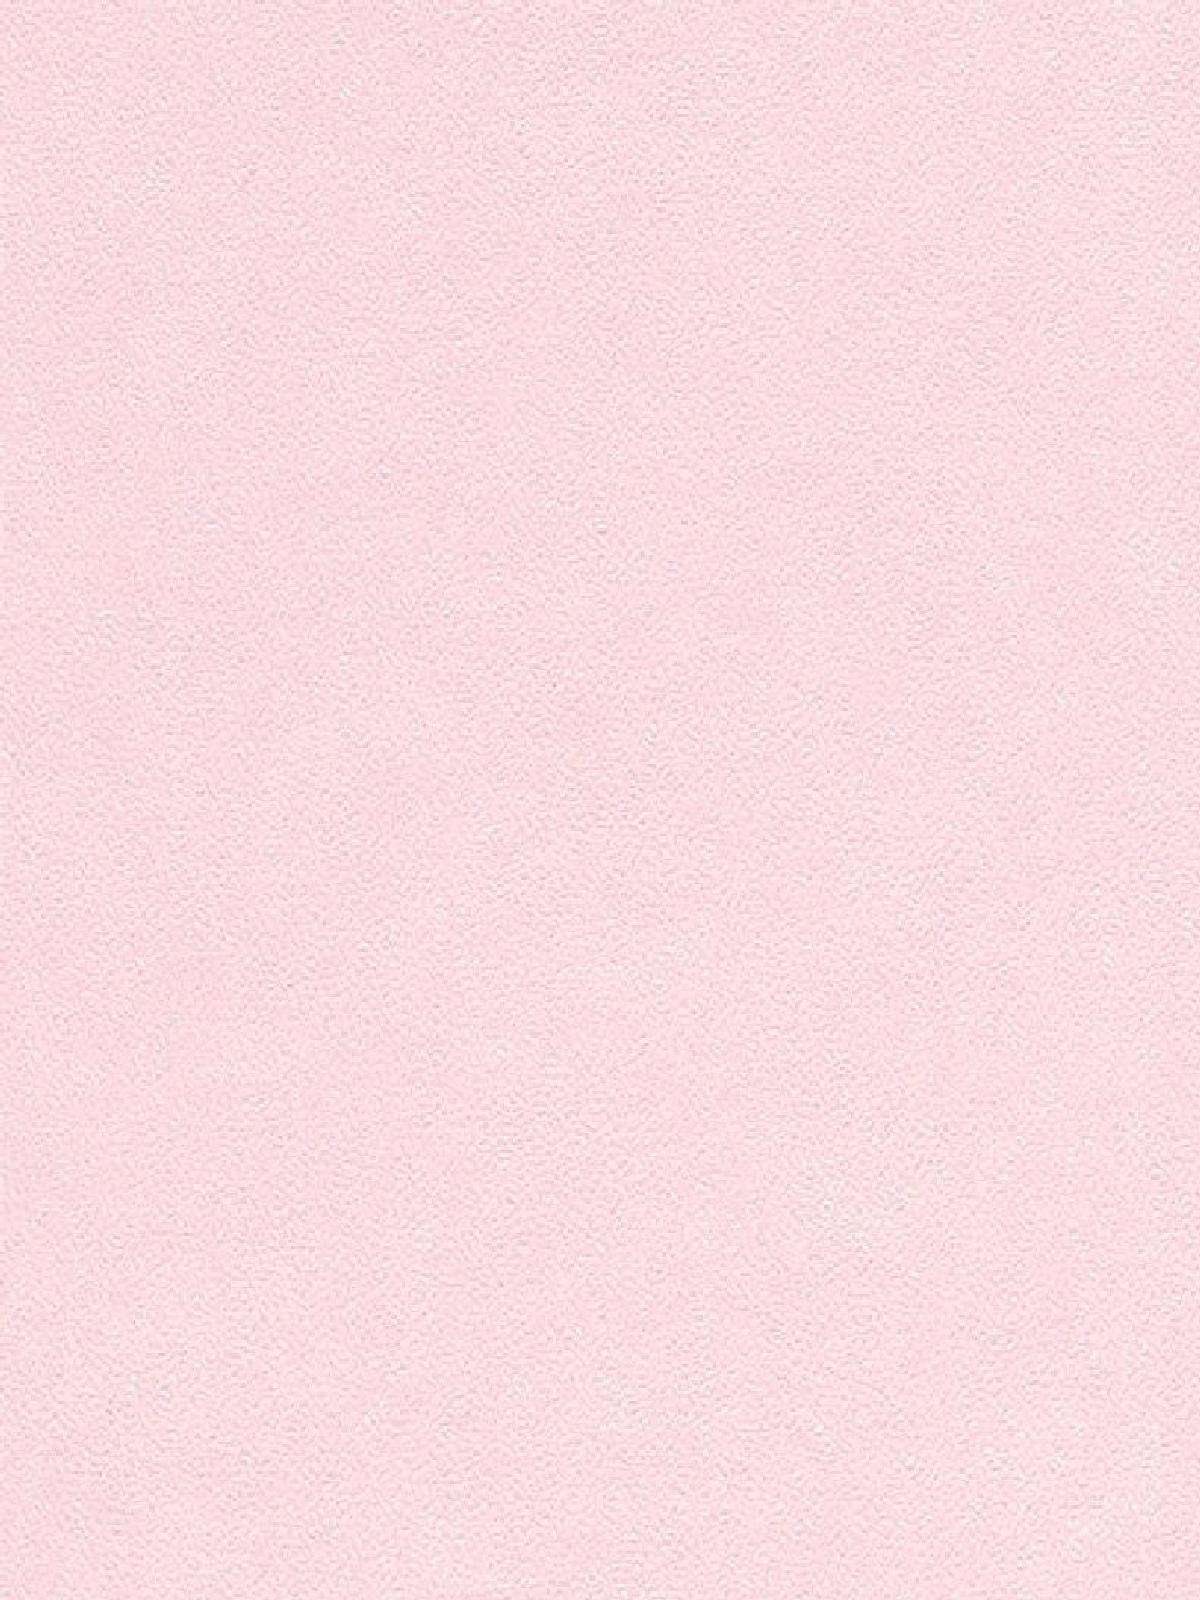 Beige Pink Wallpaper Free Beige Pink Background